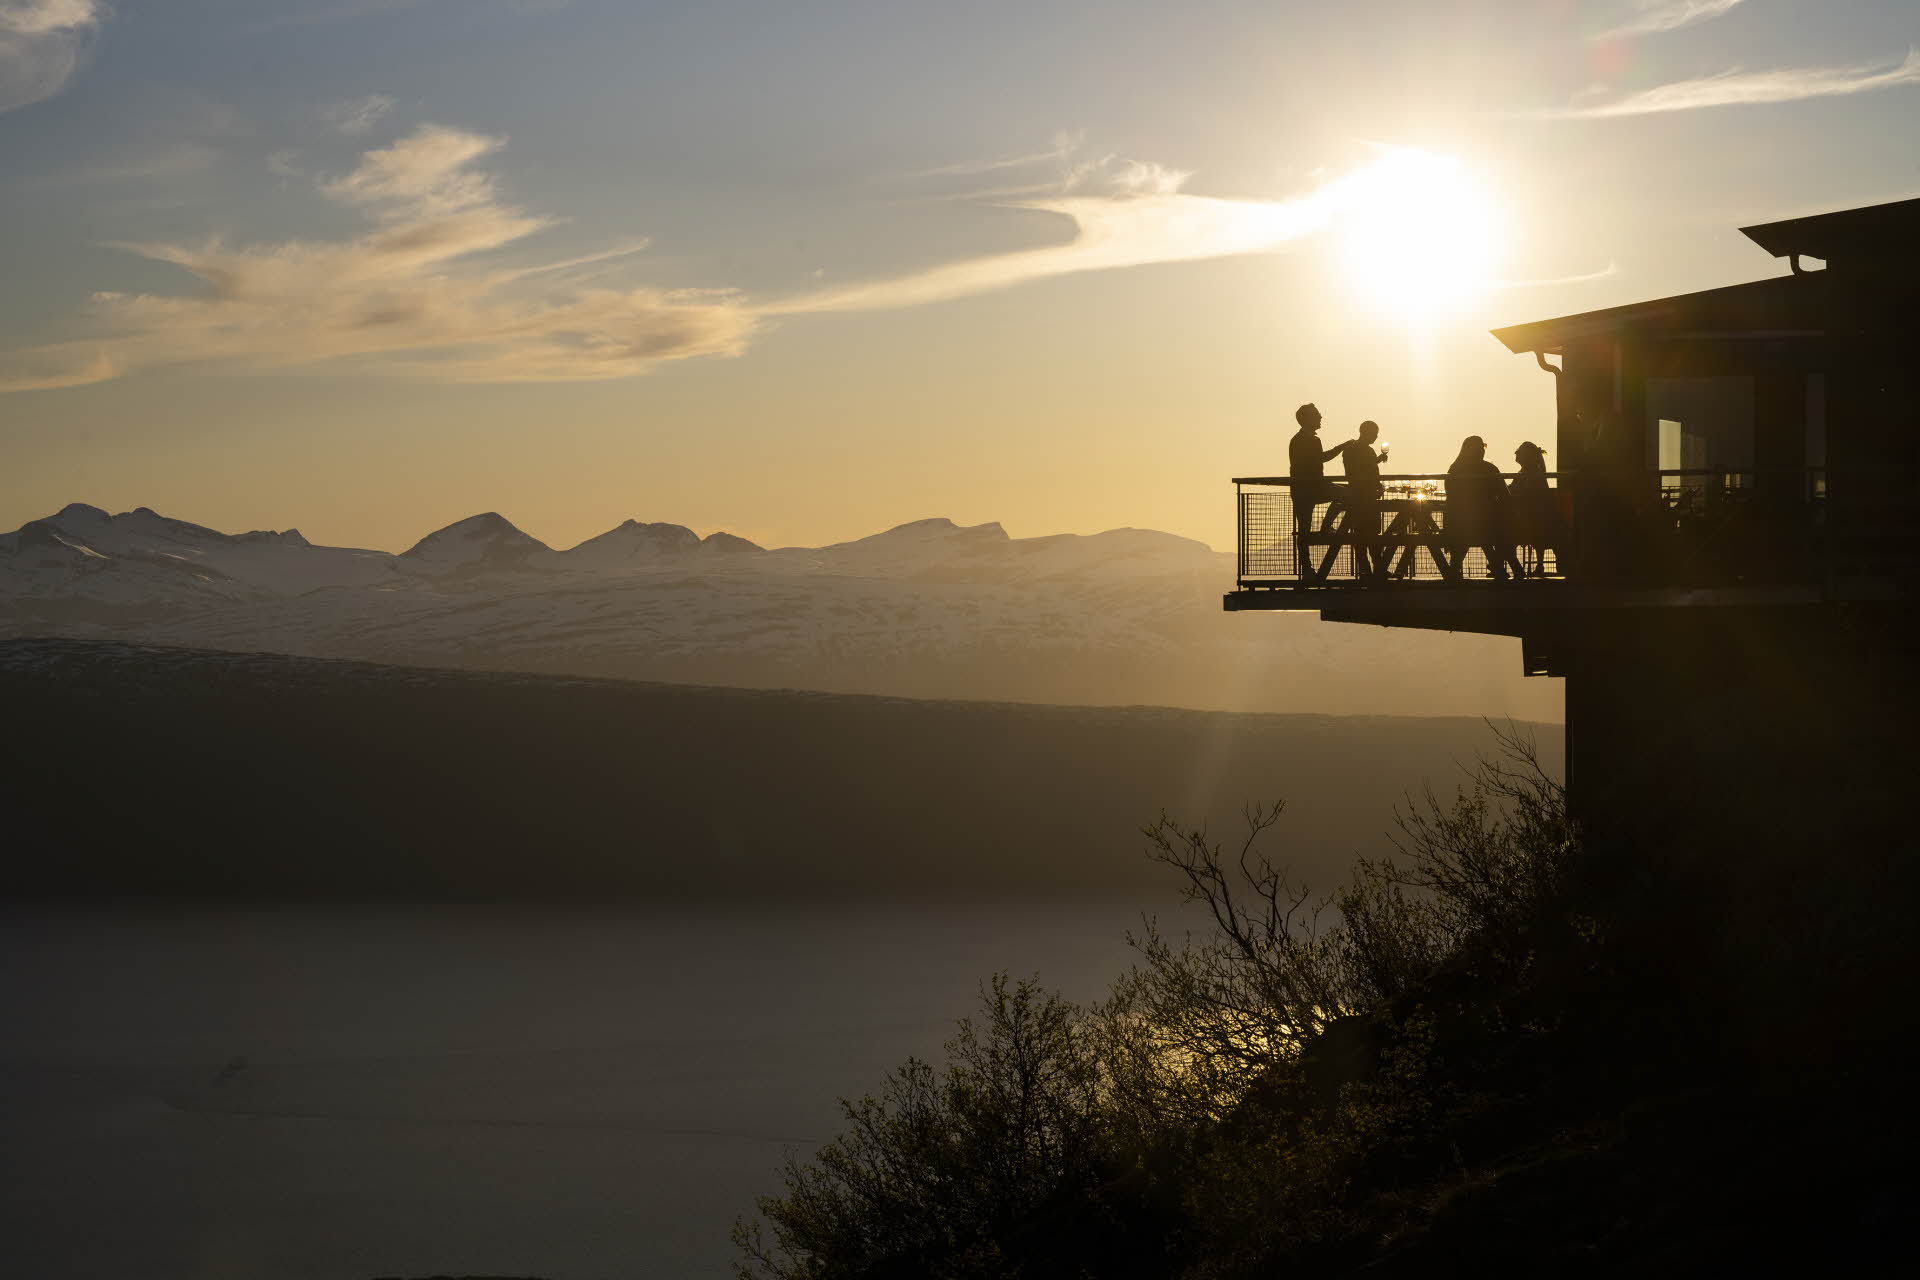 Des personnes se tiennent debout sur le balcon du restaurant Narvikfjellet au soleil de minuit. Les fjords et les montagnes sont visibles à l’arrière-plan.